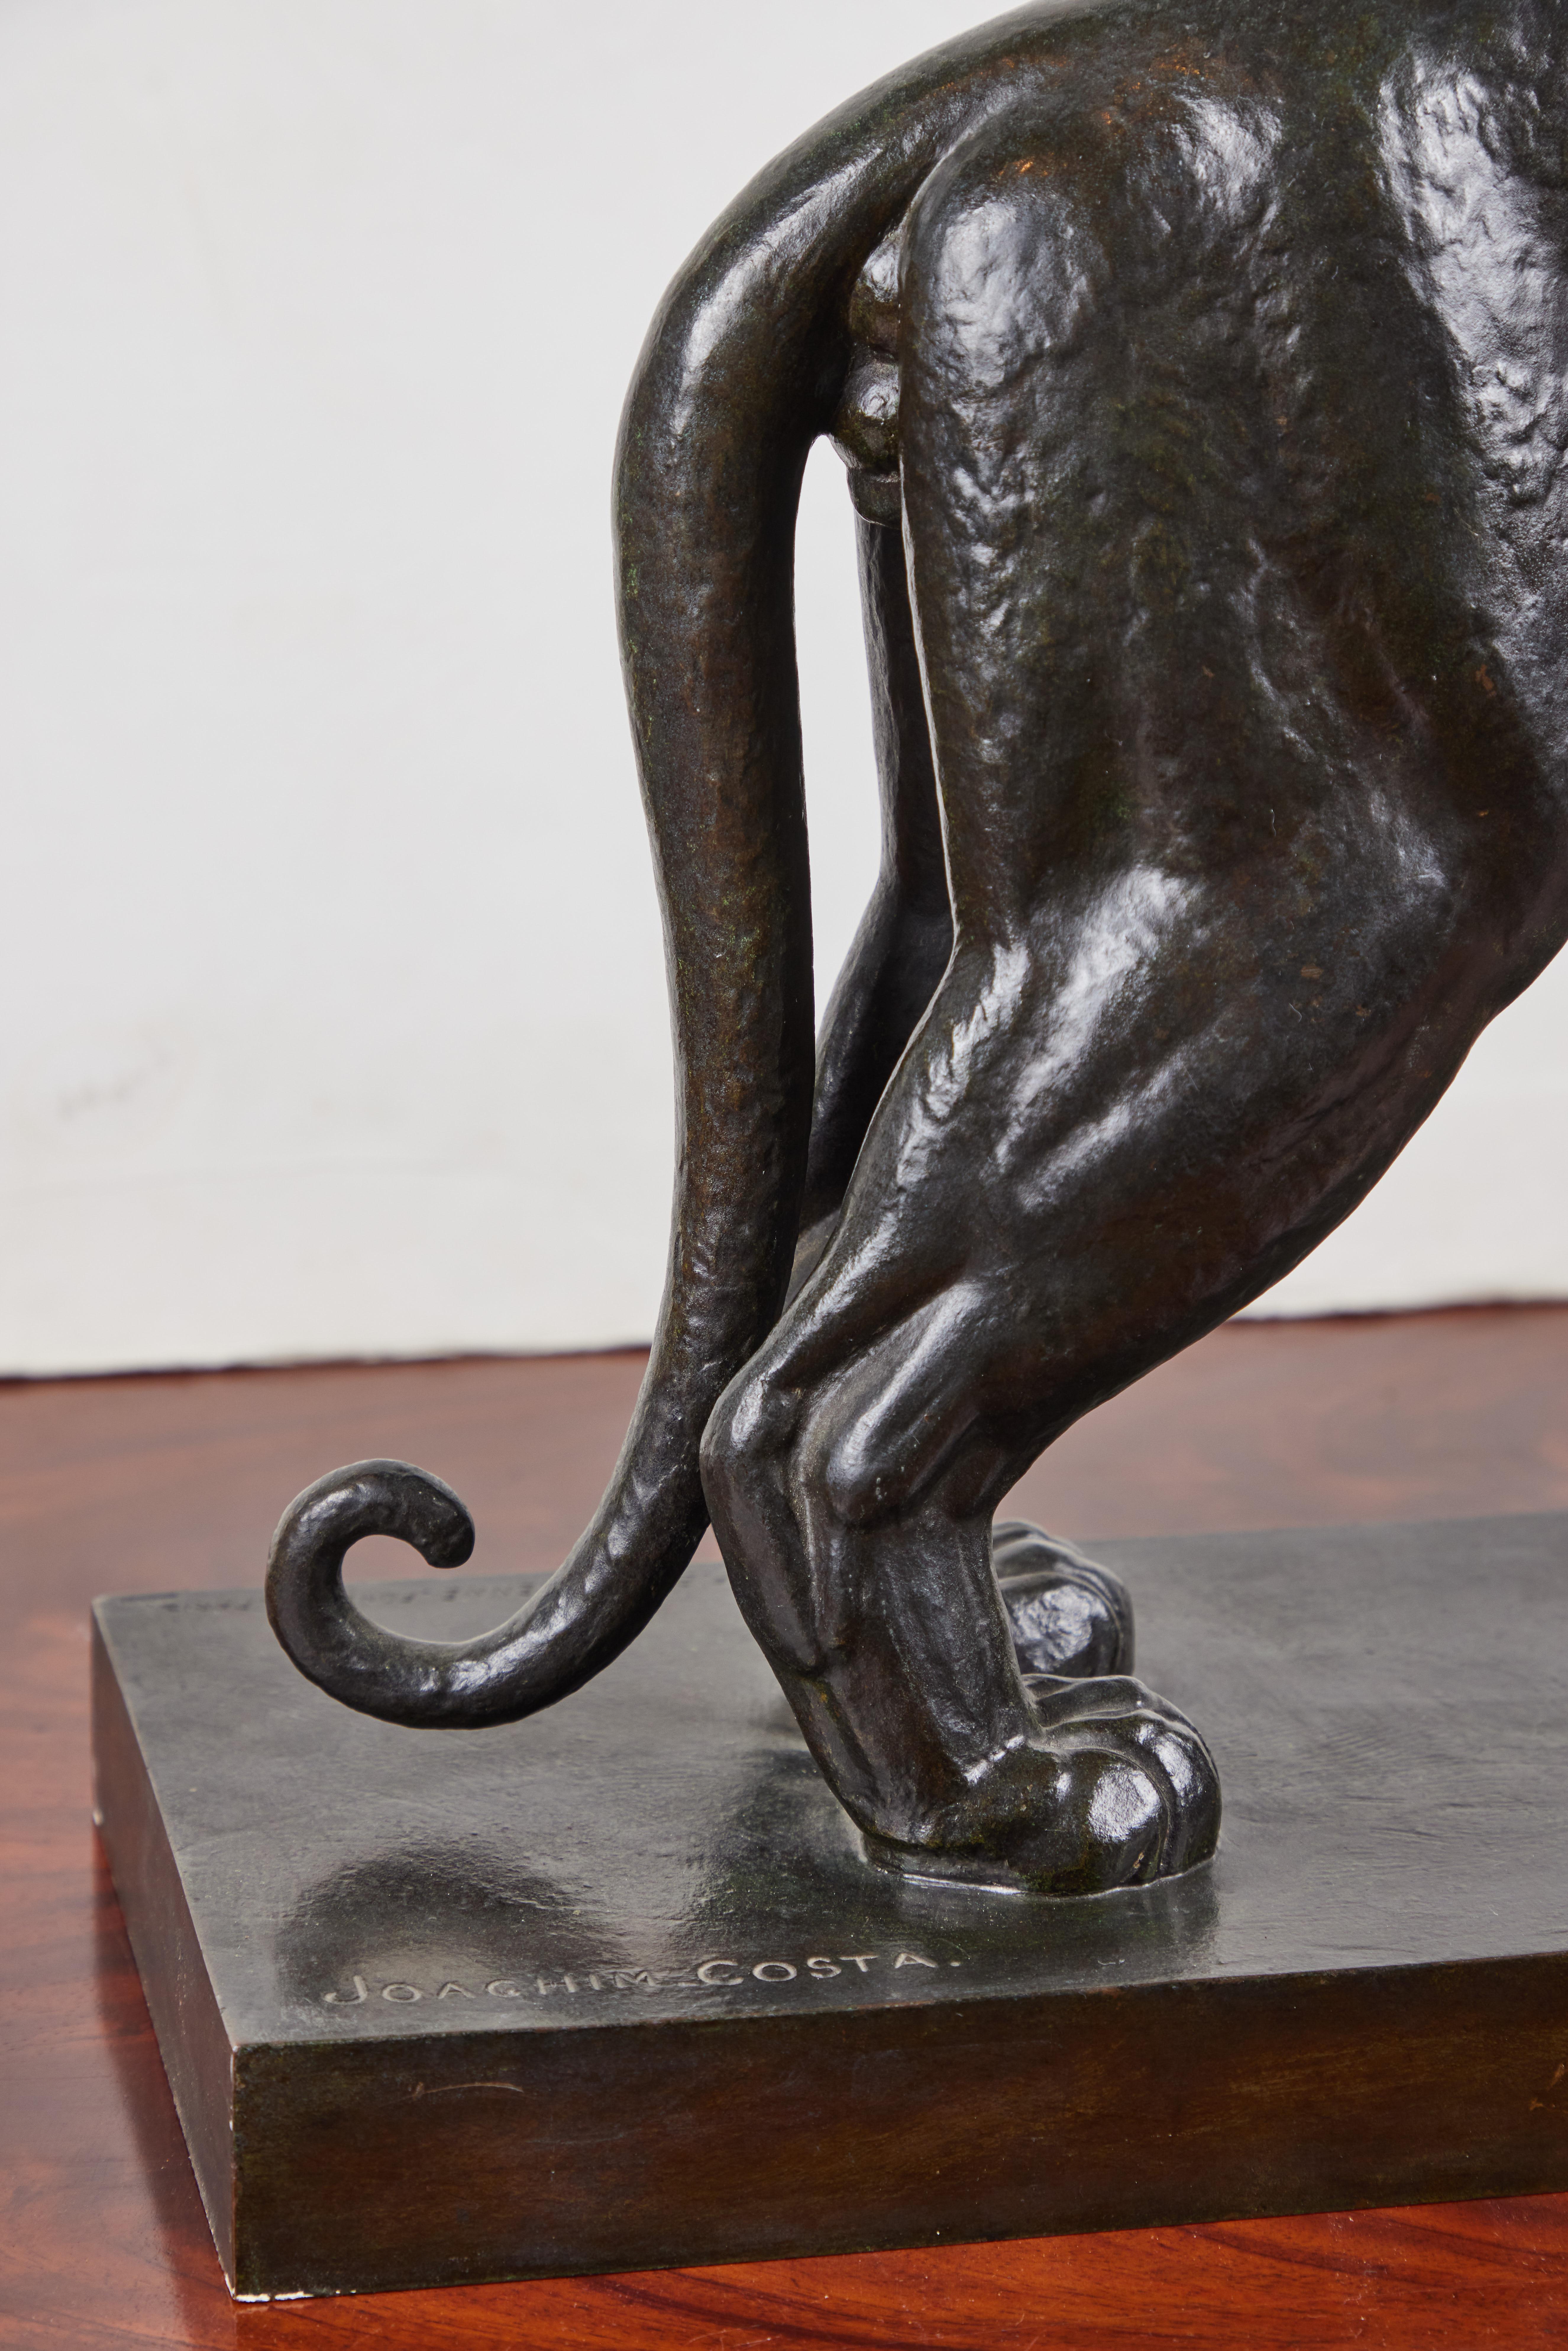 Tigre- Un tigre saisissant, vital, en bronze moulé patiné, de l'artiste français Joachim Costa (1888-1971). La pièce est estampillée avec l'emplacement de sa fondation, la célèbre 